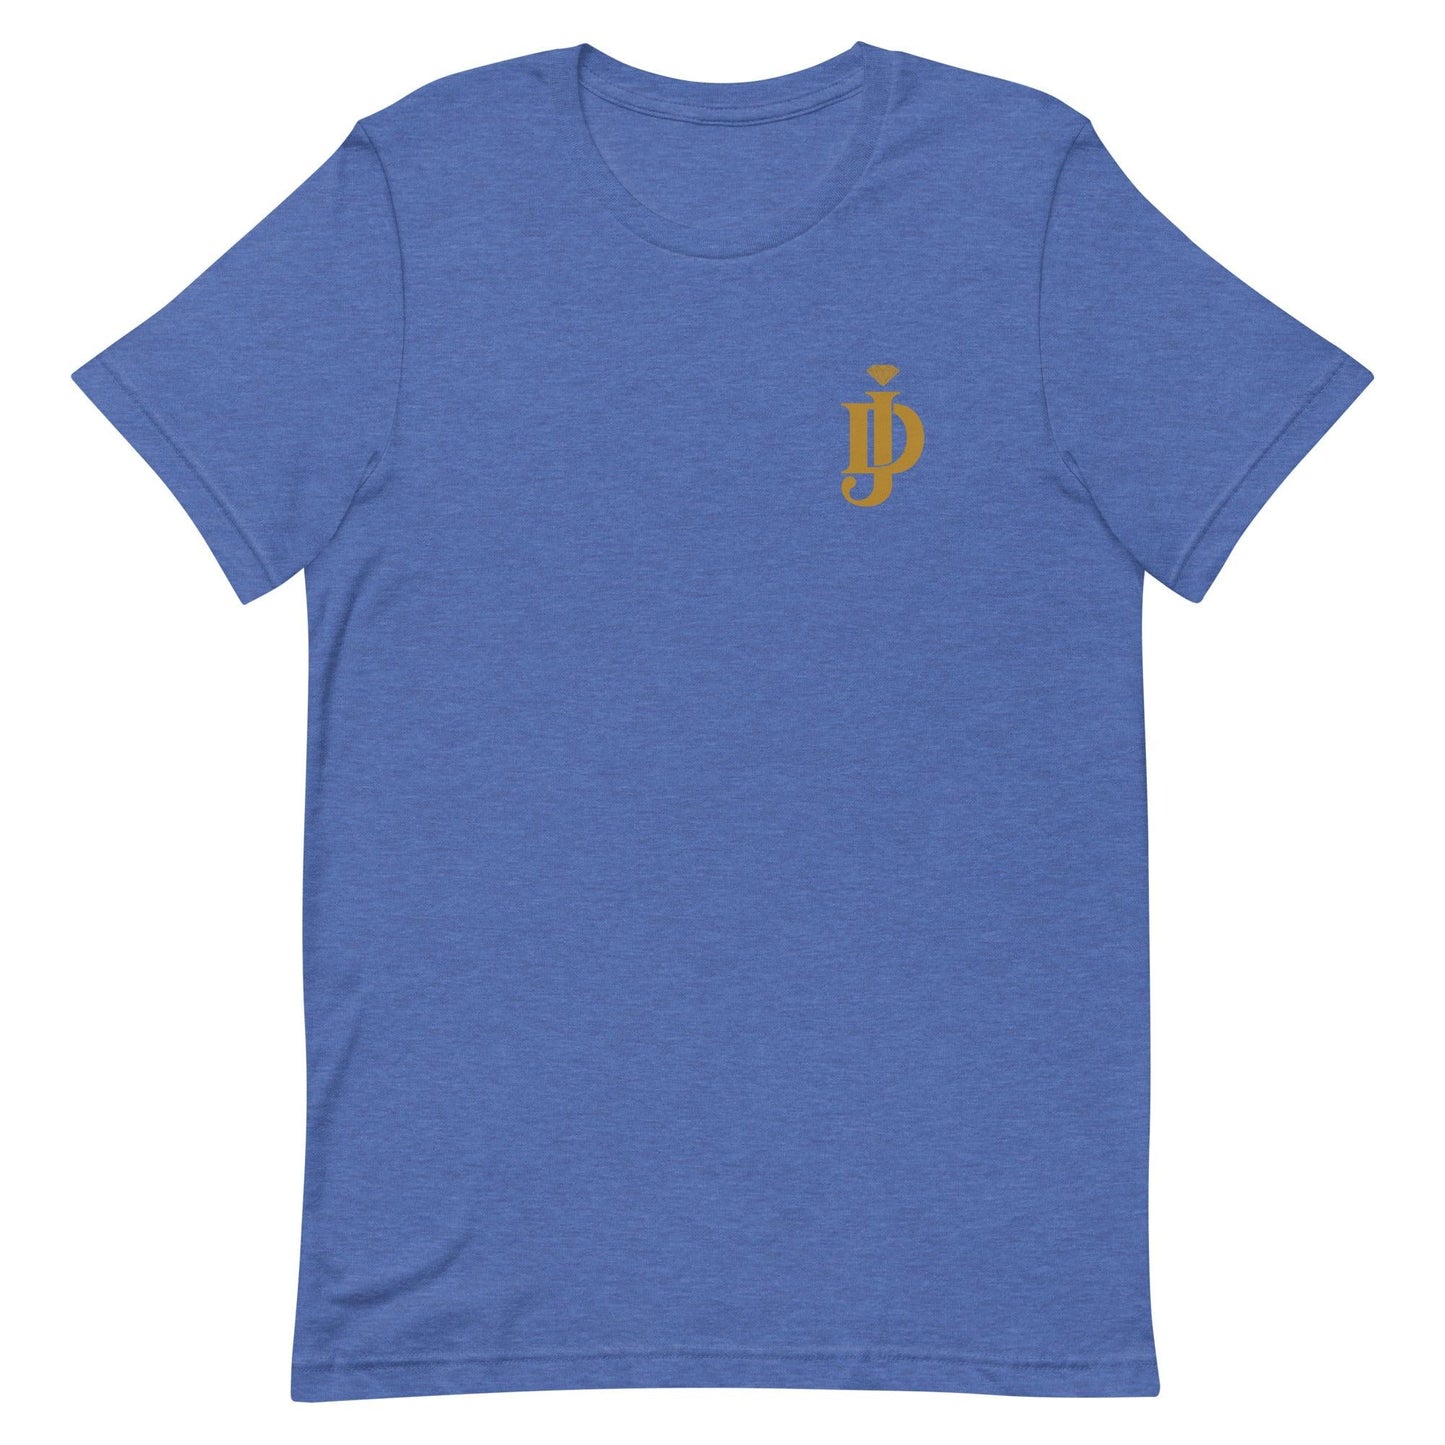 Juan Davis "Diamond" t-shirt - Fan Arch